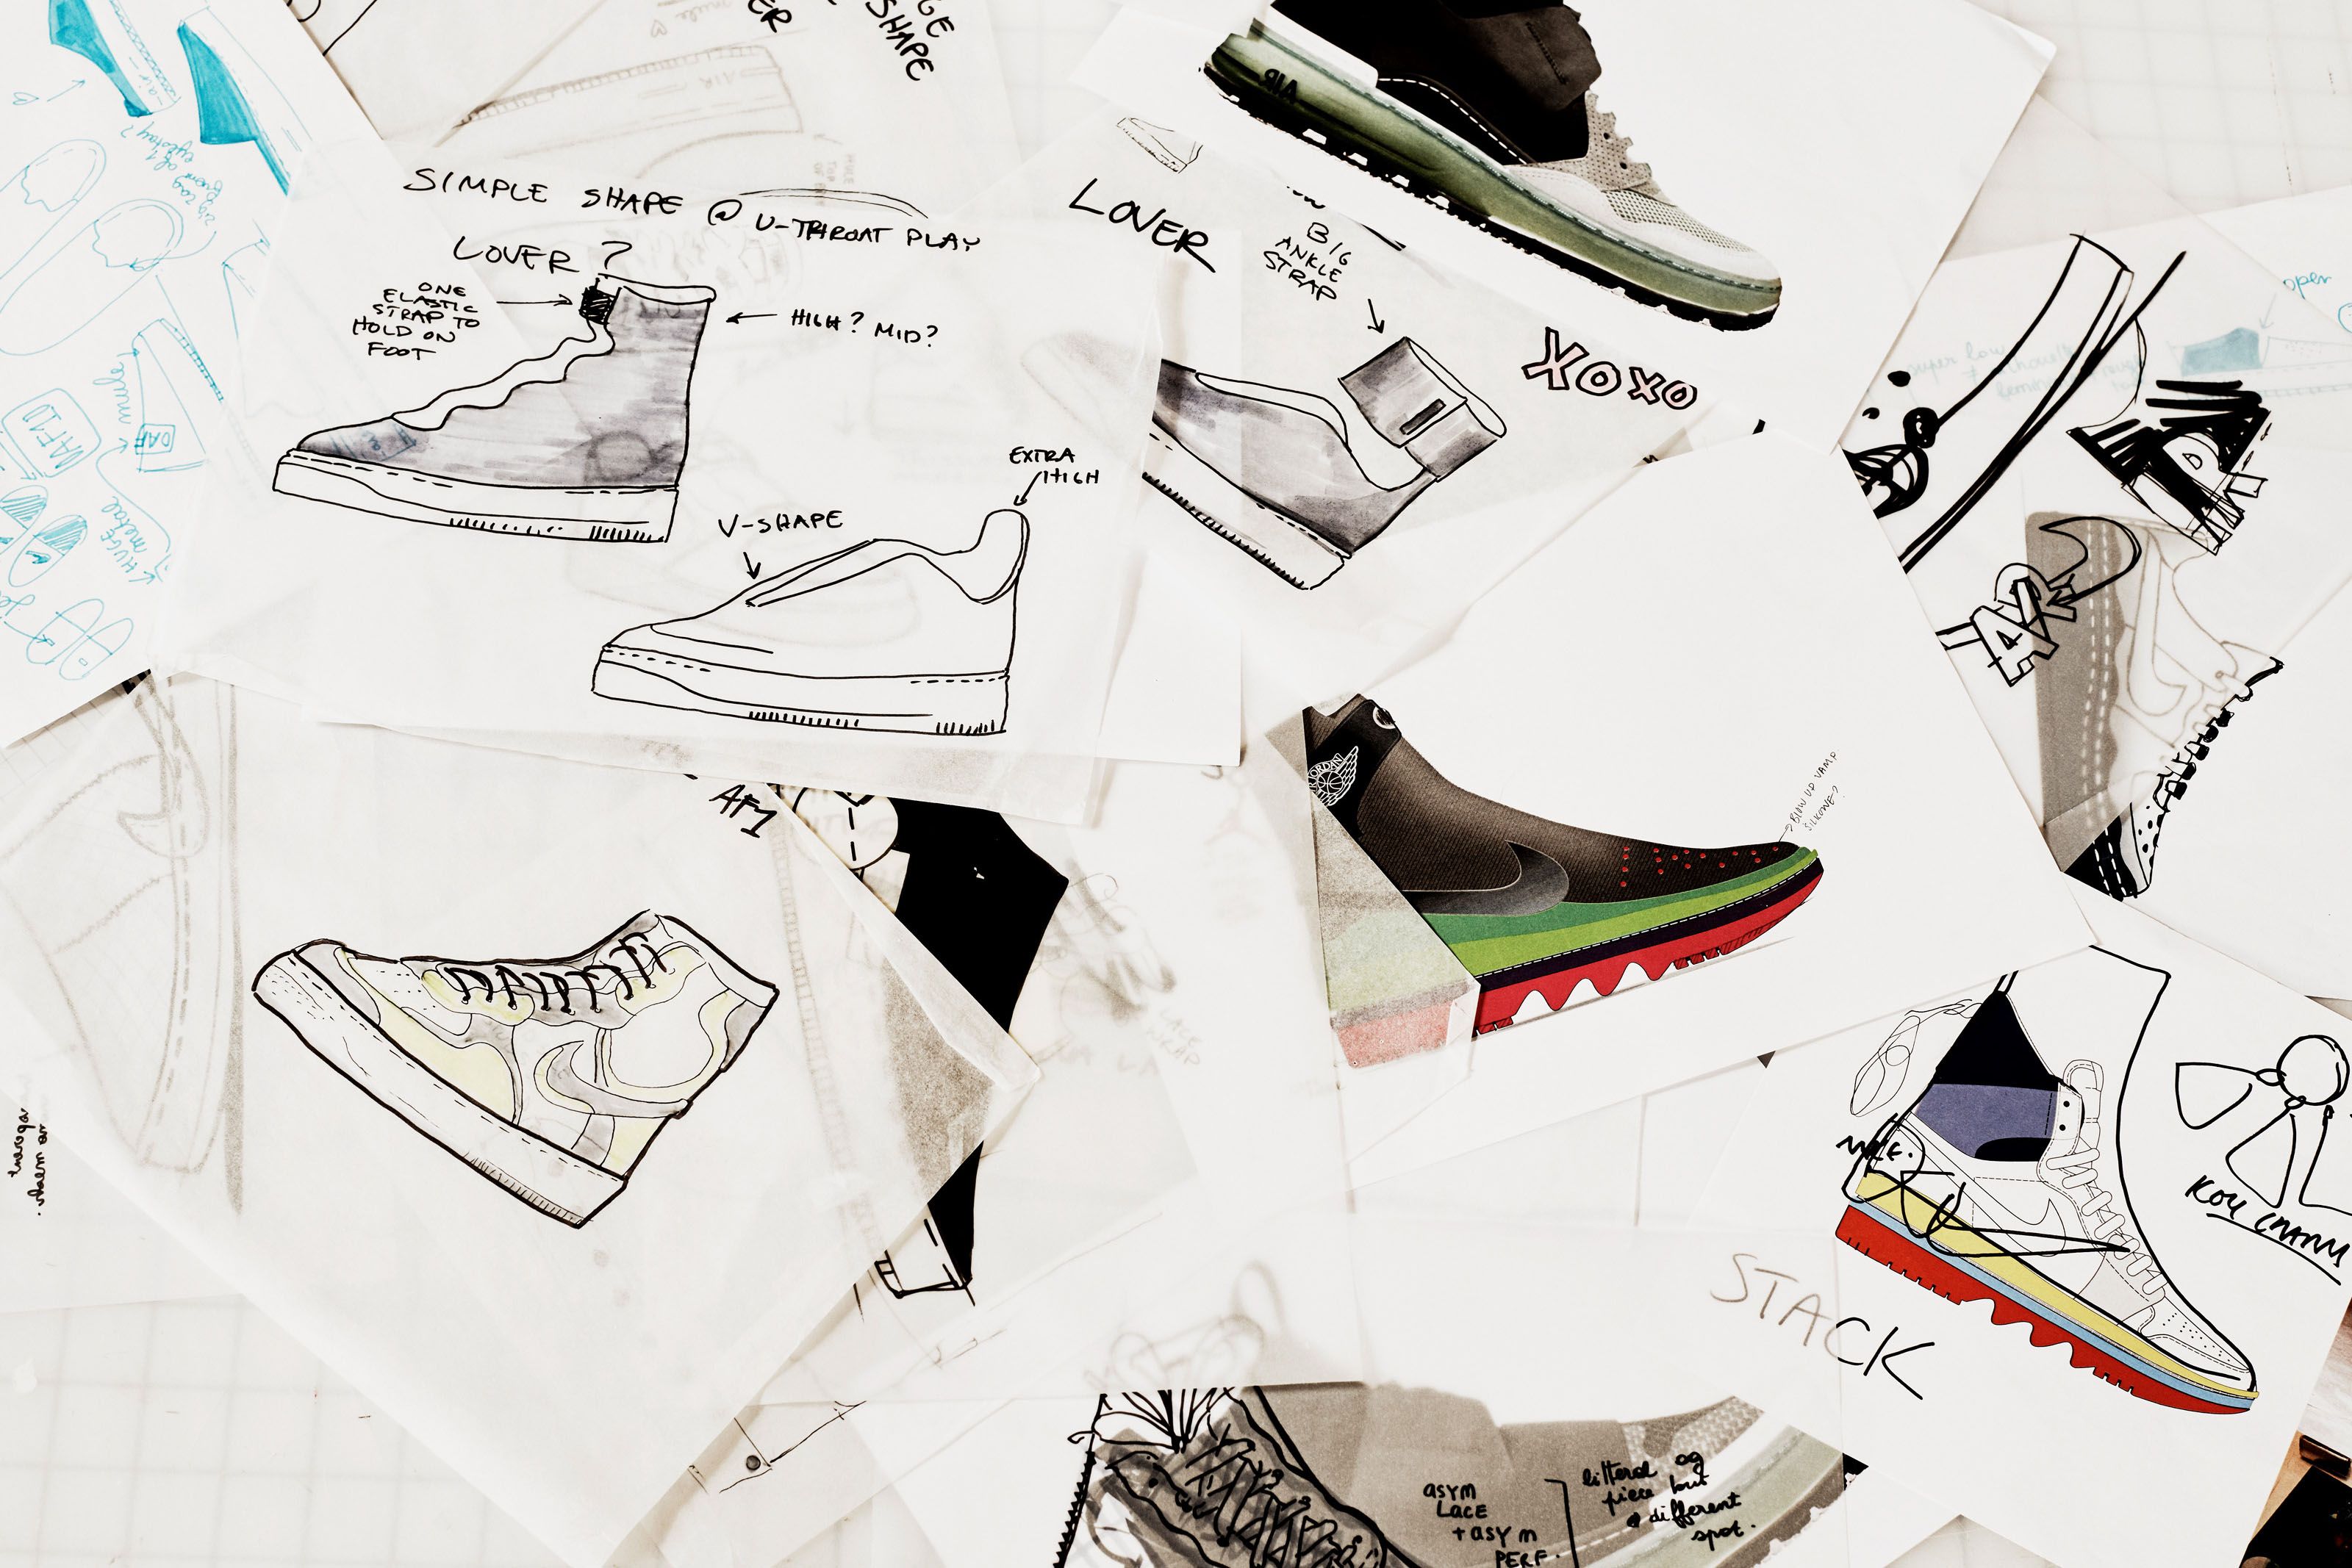 Nhãn hiệu nike sneaker chính là tên tuổi của sự chất lượng và uy tín khiến bao người mê phải xiêu lòng. Hãy ngắm nhìn những hình ảnh về giày Nike sneakers đầy cá tính và tinh tế để có những trải nghiệm thú vị cho phong cách thời trang của bạn.